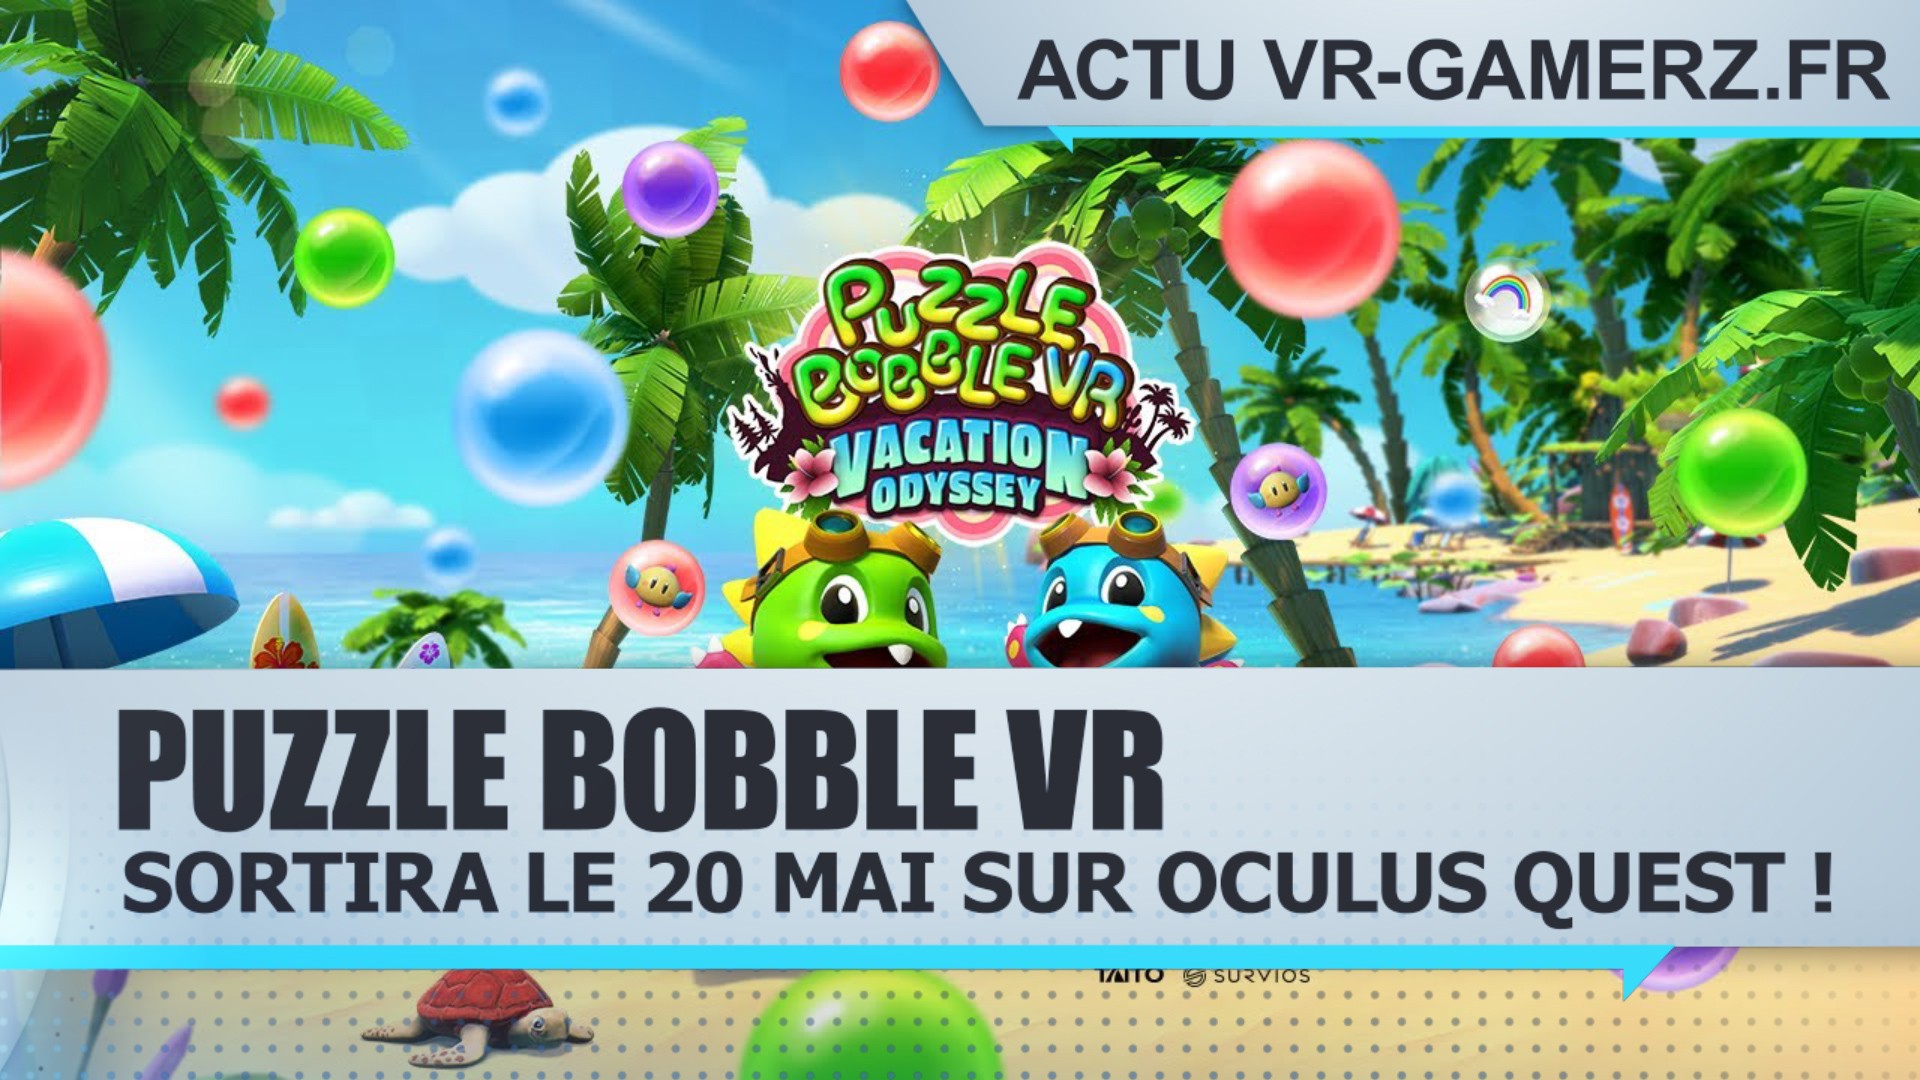 Puzzle Bobble VR sortira le 20 Mai sur Oculus quest !